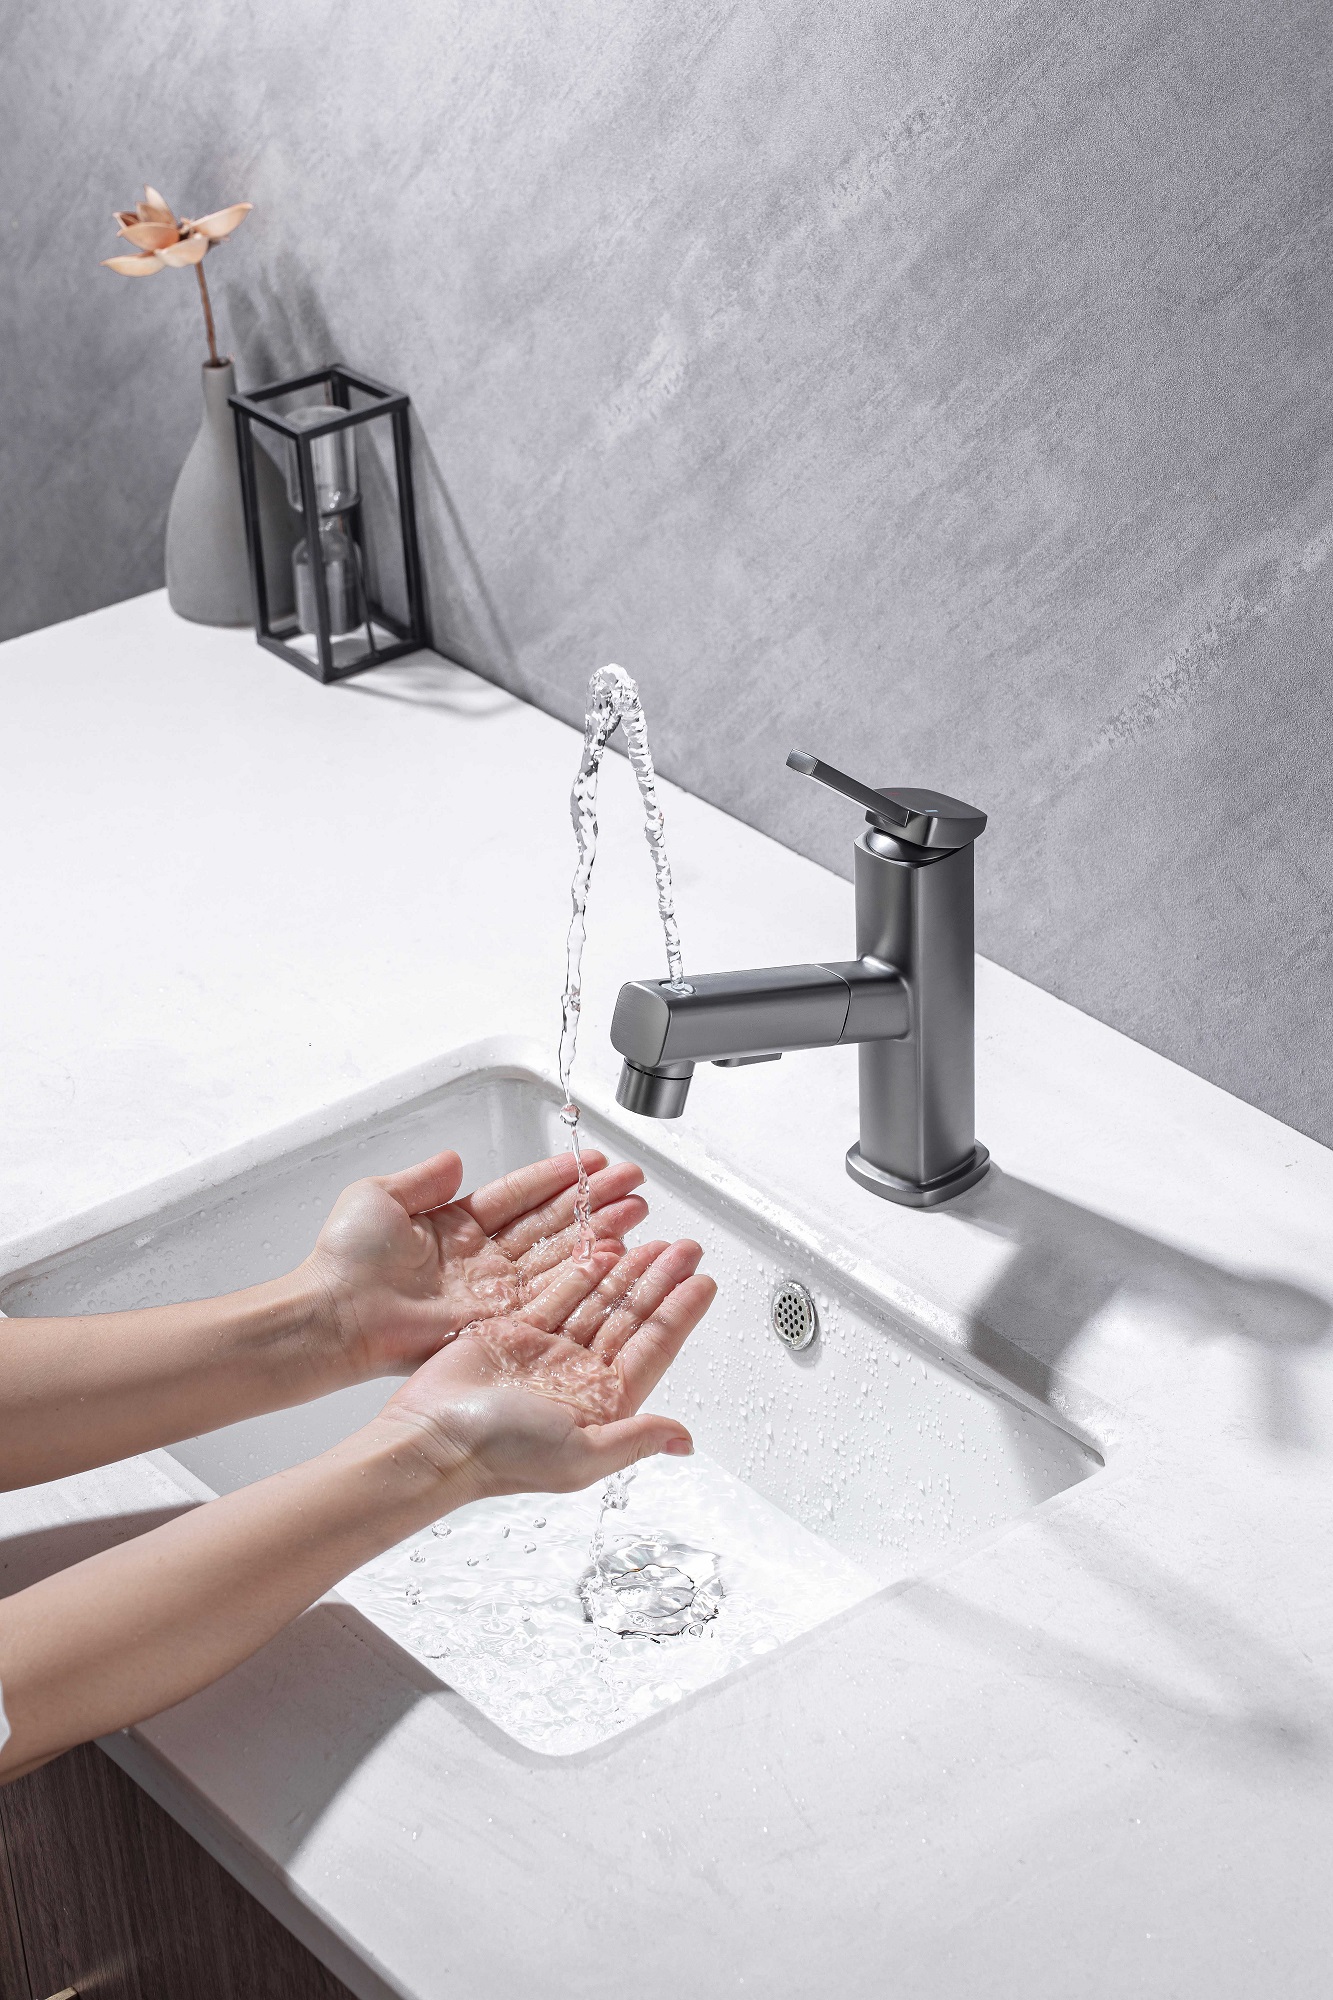 Смеситель для ванной комнаты с выдвижным распылителем для воды для зубной щетки Белые смесители для ванной комнаты